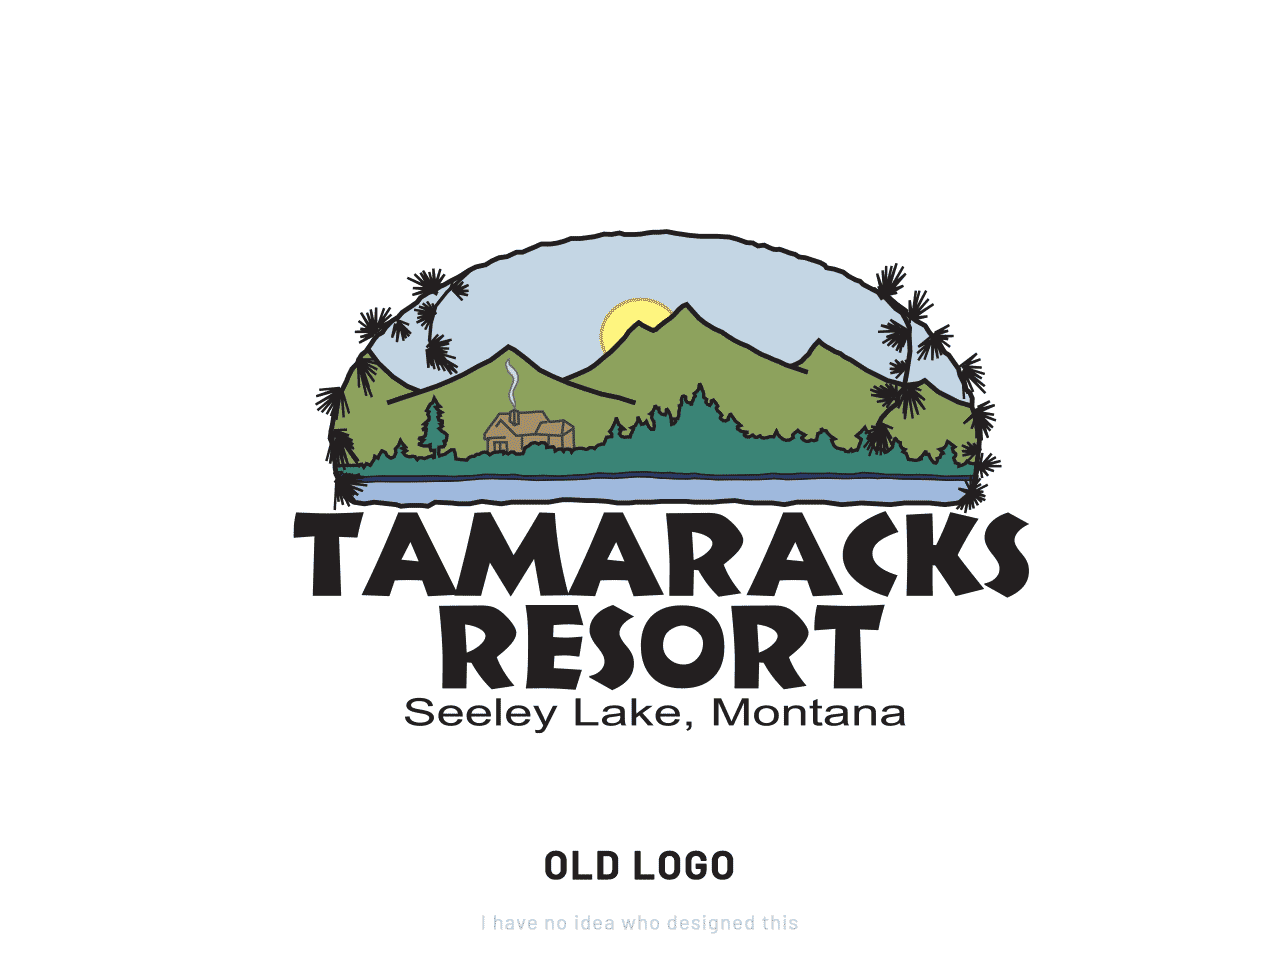 Rebranding for Tamaracks Resont on Seeley Lake, Montana - old logo